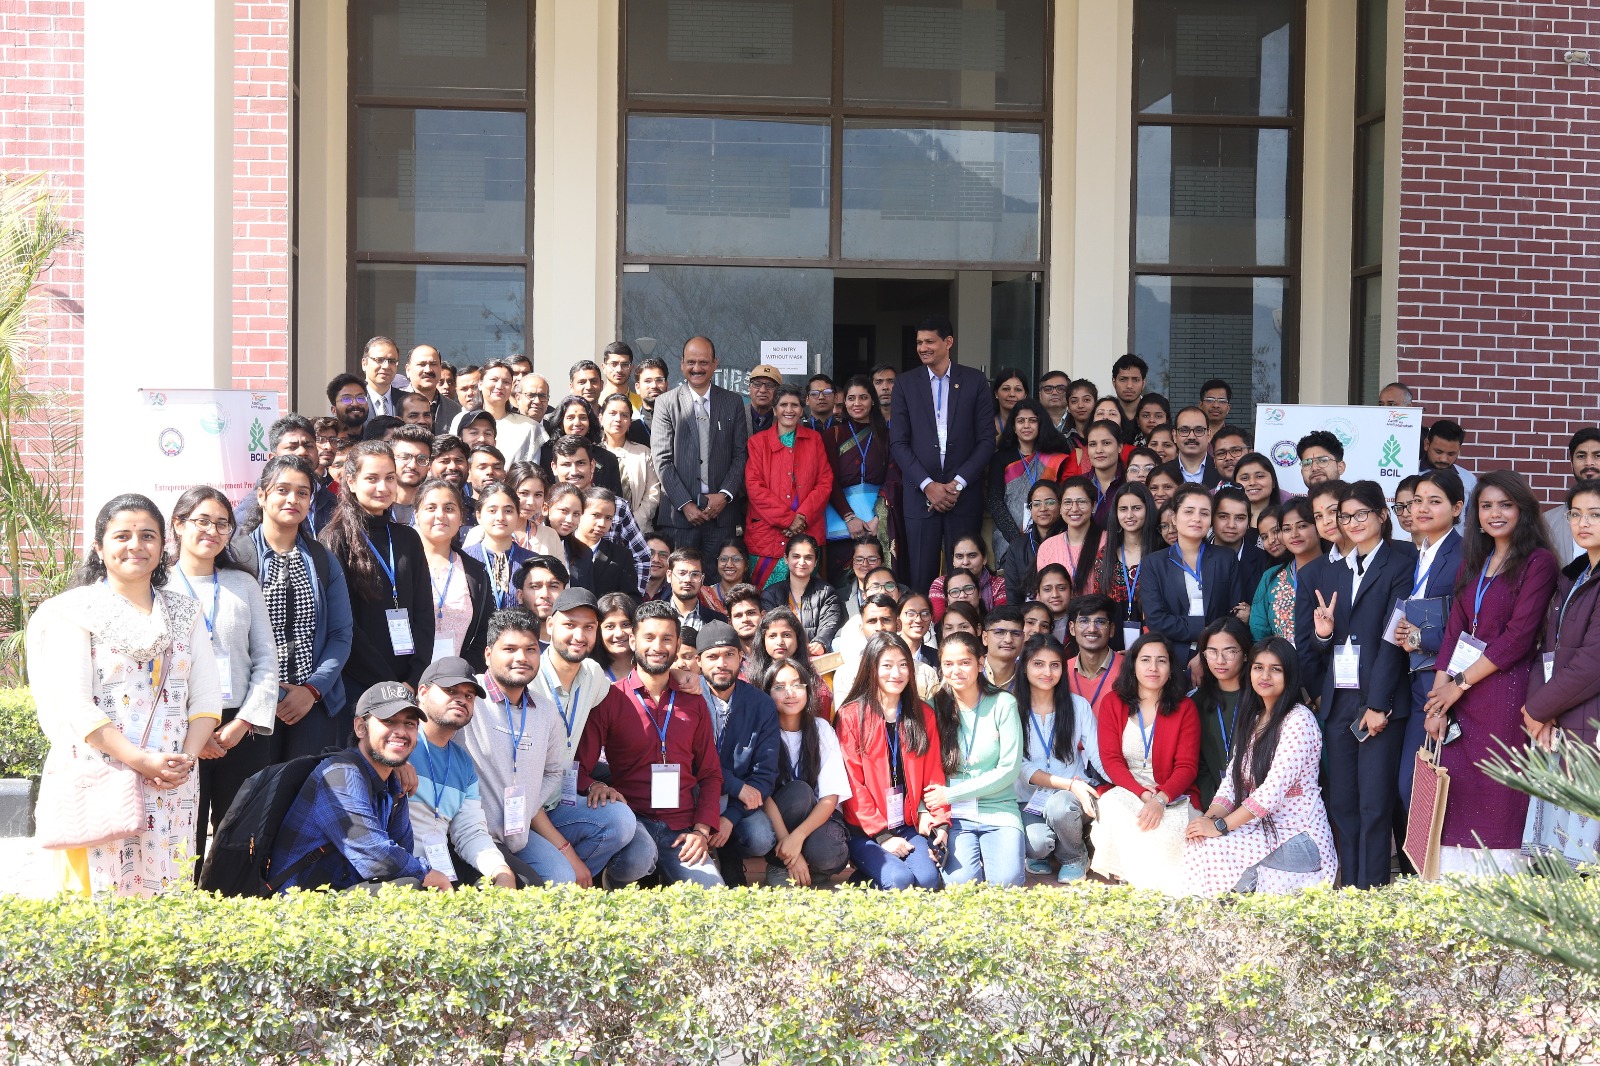 गढ़वाल विशवविद्यालय में उद्यमिता विकास कार्यक्रम का आयोजन, 100 से अधिक शोधकर्ता, पीएचडी छात्रों ने किया प्रतिभाग।